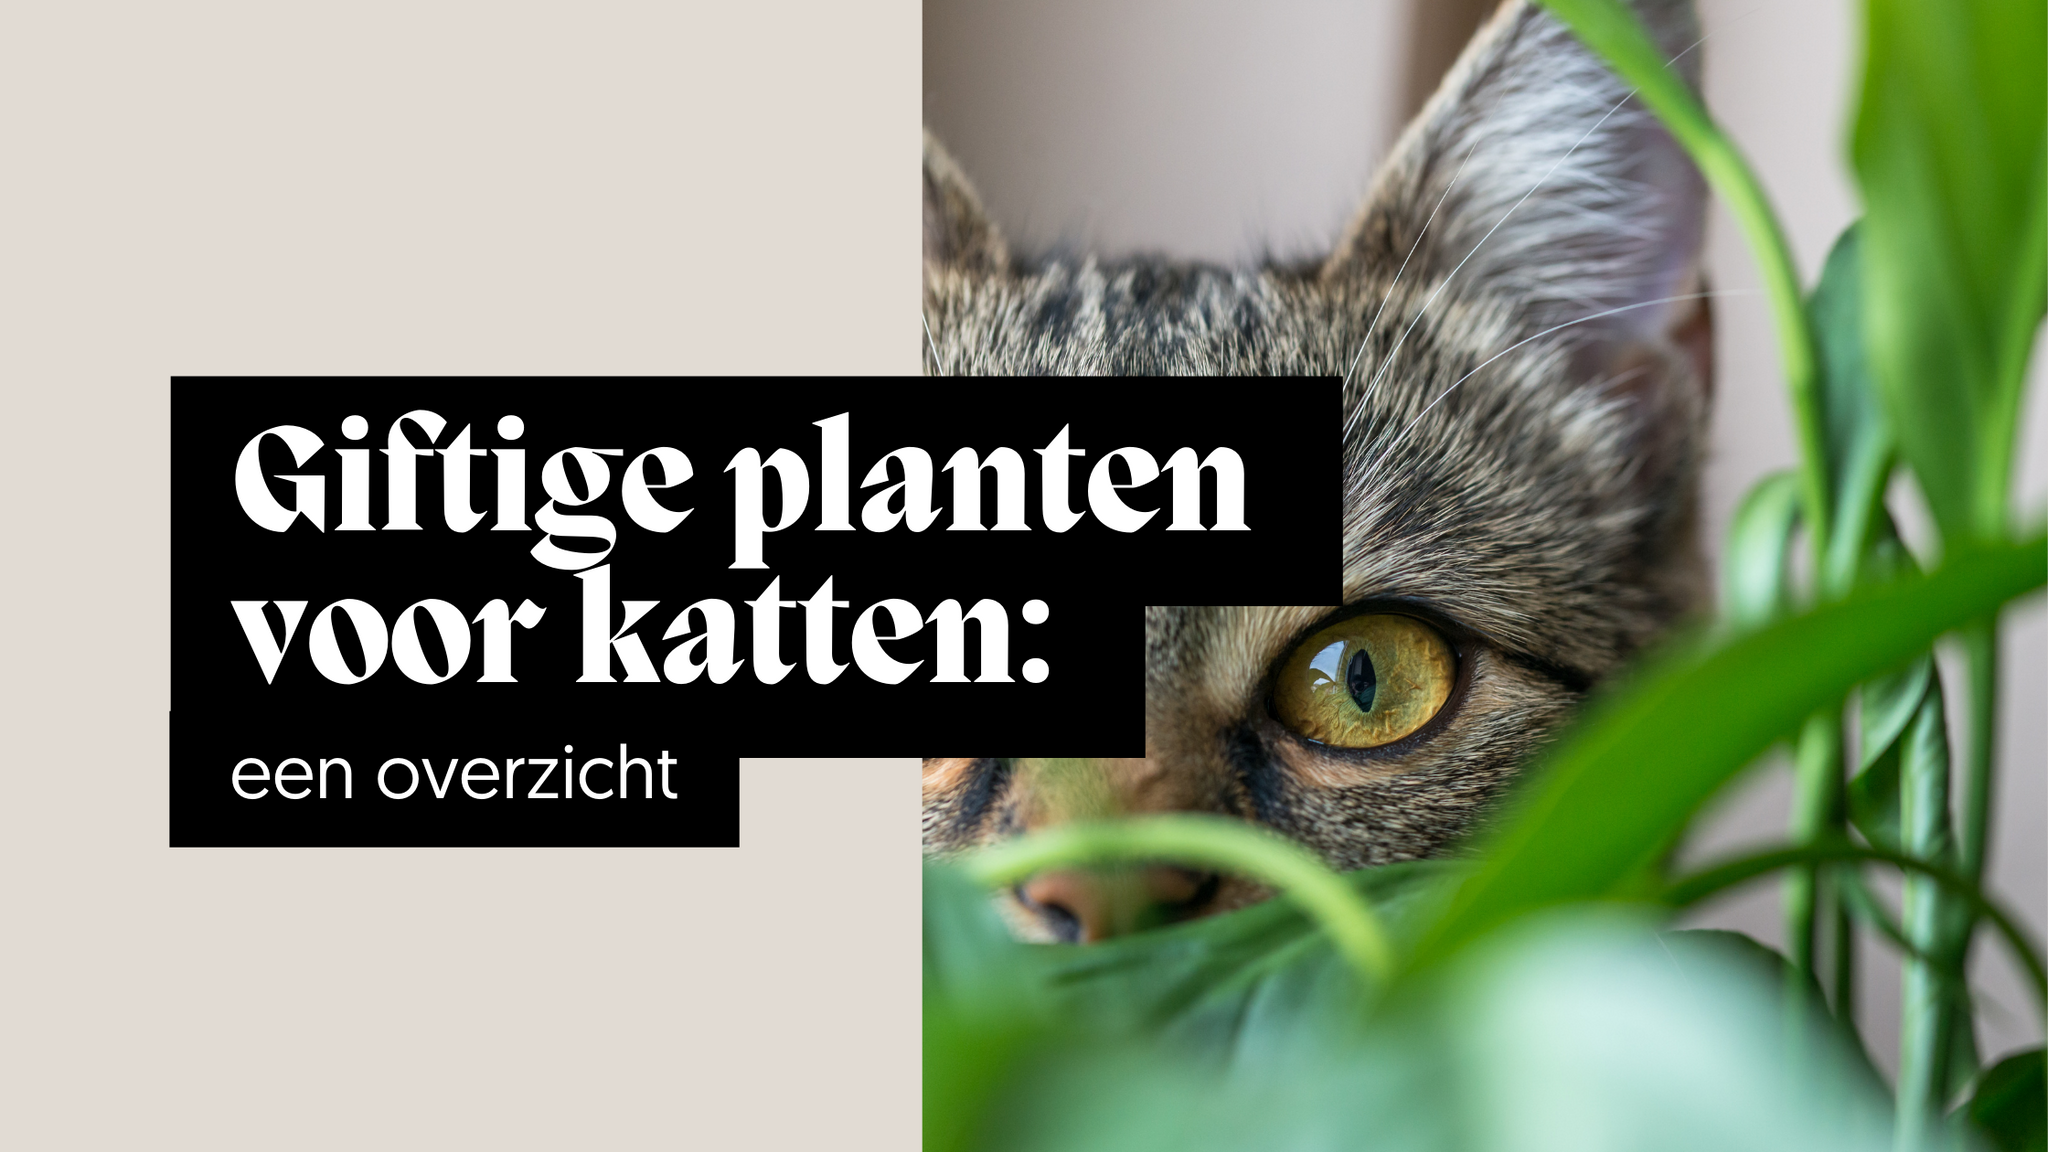 Giftige planten voor katten: een overzicht